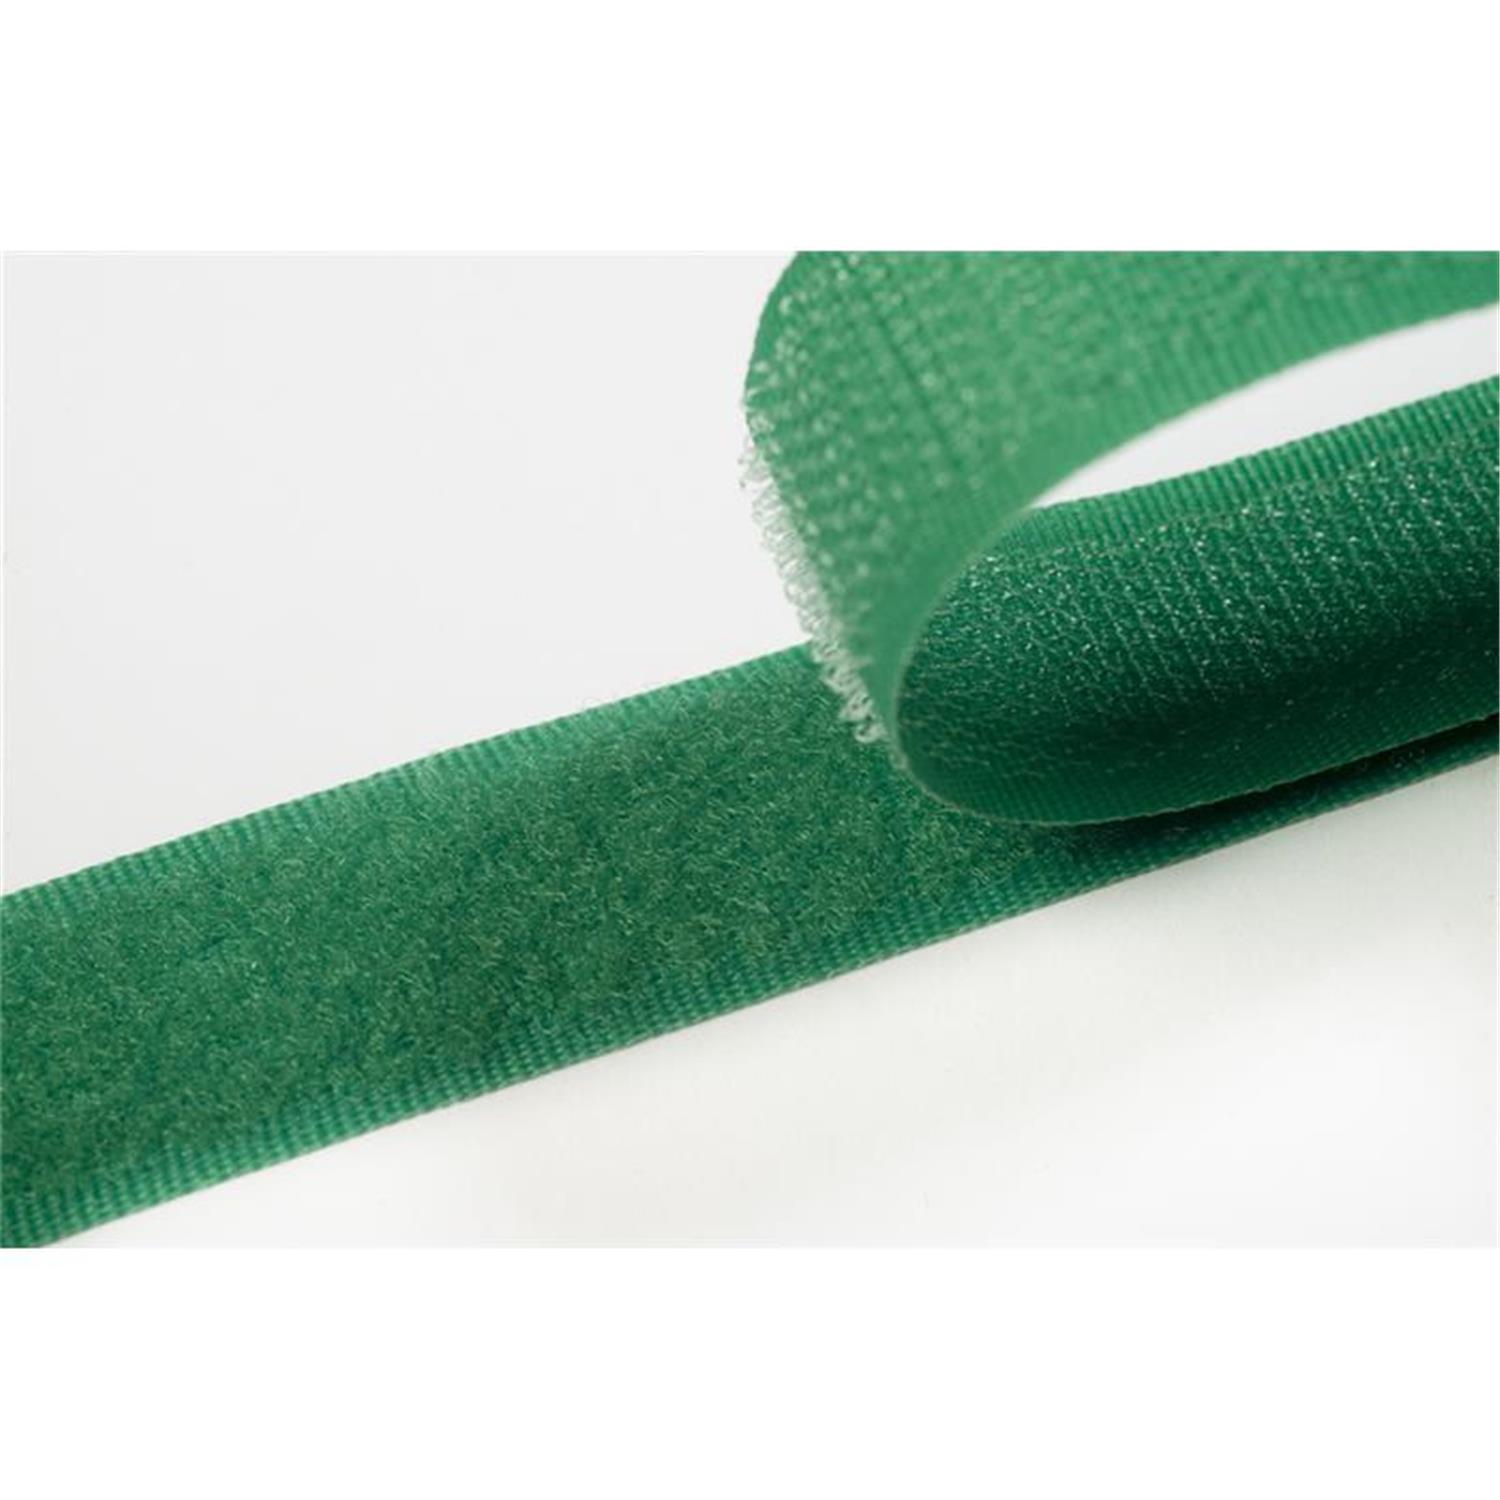 Klettband zum aufnähen, 20 mm, grün #30 4 Meter